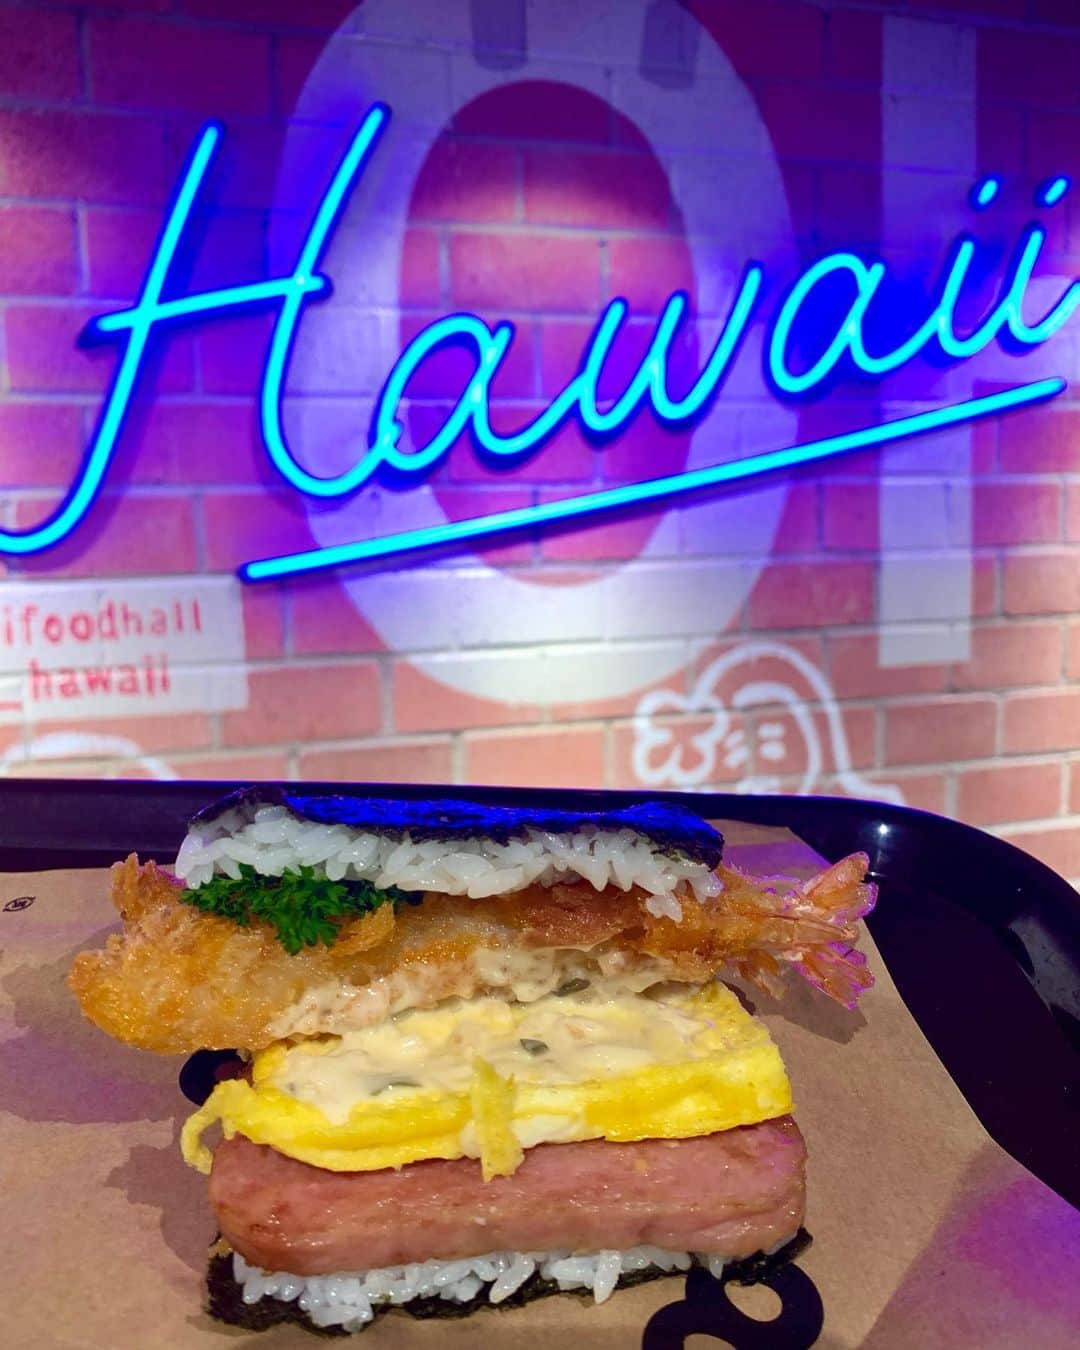 kawaiihawaiitourのインスタグラム：「ハワイのロイヤルハワイアンセンターにできたお店、Pork Tamago Onigiri のスパムムスビのお店を紹介致します！スパム、たまご、エビフライののっている具がてんこ盛りのムスビを買って食べてみました！おにぎりも、スパムも、マヨネーズで調和されていてめちゃくちゃおいしかったです！カワイイ・ハワイ・ツアーでも行けますよ！当社では、お客様が行きたいところを自由に選んでもらって好きなようにツアーが回れます‼️ ------------------------------------------------------- ❤️Kawaii Hawai'i Tour / カワイイ・ハワイ・ツアー ❤️✨🌈プラン🌈✨ (ハワイ州政府公認会社 PUC 497-C) ✔︎日本人経営 日本人ガイド付きツアーなので安心️🏝✨😎👍🏽 ✔︎あなただけのオリジナルツアーが作れます ✔︎初ハワイ満喫コース、オススメスケジュールご用意しています‼︎ ✔︎ガイドブック派？それともローカル体験派？ ✔︎なんでもご相談下さい 💁🏽‍♂️💁🏽☀️🏝✨😎👍🏽 ✔︎お写真もたくさんお撮りします🤳 ------------------------------------------------------ 飽くことなく与え続けてください。残り物ではいけません。痛みを感じるまでに、自分が傷つく程に与え尽くしてください(マザー・テレサ) ------------------------------------------------------ お客様の笑顔が私達の笑顔をモットーにツアーをさせてもらっています🚙🚖🚘 --------------------------------------------------------  #ハワイ #hawaii  #カワイイハワイツアー　#コロナ　#ファインダー越しの私の世界 #カカアコ #ハワイ好き #ラニカイビーチ #天国の海 #ハワイウェディング #ハワイ行きたい #ハワイツアー #アウラニディズニー  #ハワイチャーターツアー #ハワイオプショナルツアー #ハワイ旅行 #スパムむすび  #カイルア #ハレイワ 　#ハワイ挙式 #ハワイ好きな人と繋がりたい #ハワイコロナ　#インスタ映え　 #南国 #スパムおにぎり #ハワイ大好き   #オアフ島 #卒業旅行 #porktamagoonigiri  #スパム」